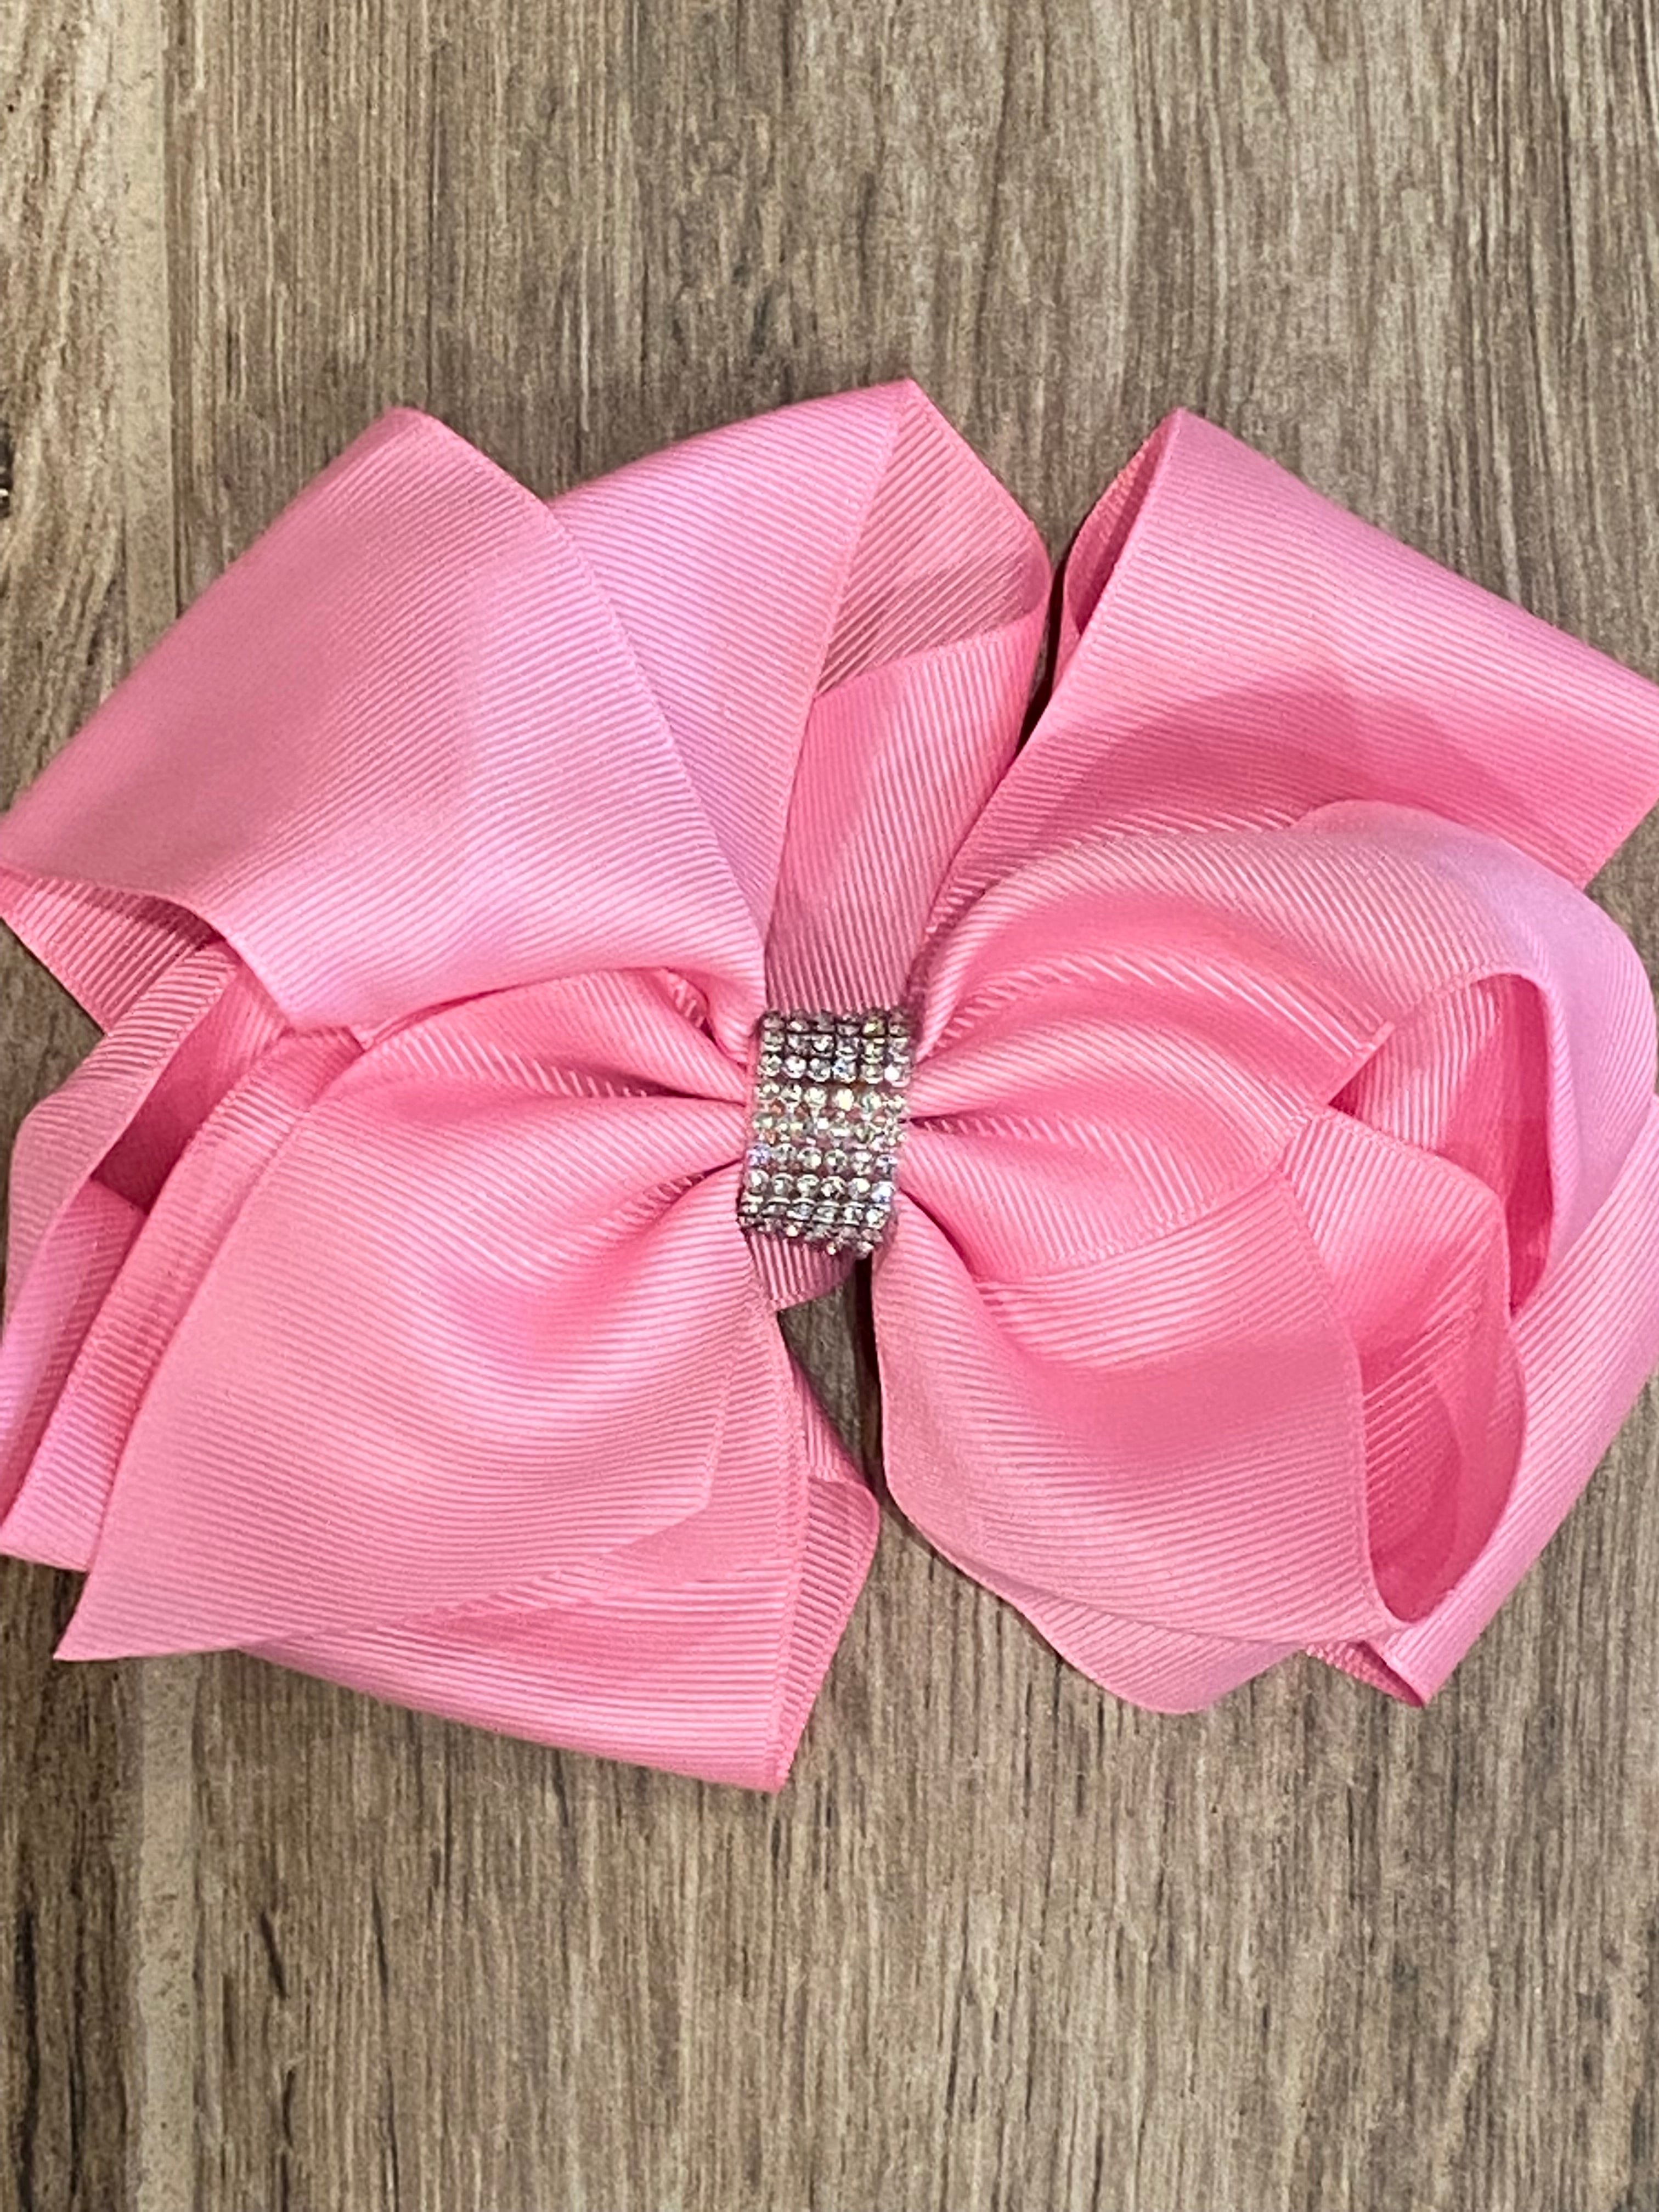 Pink Ribbon Hair Bow 